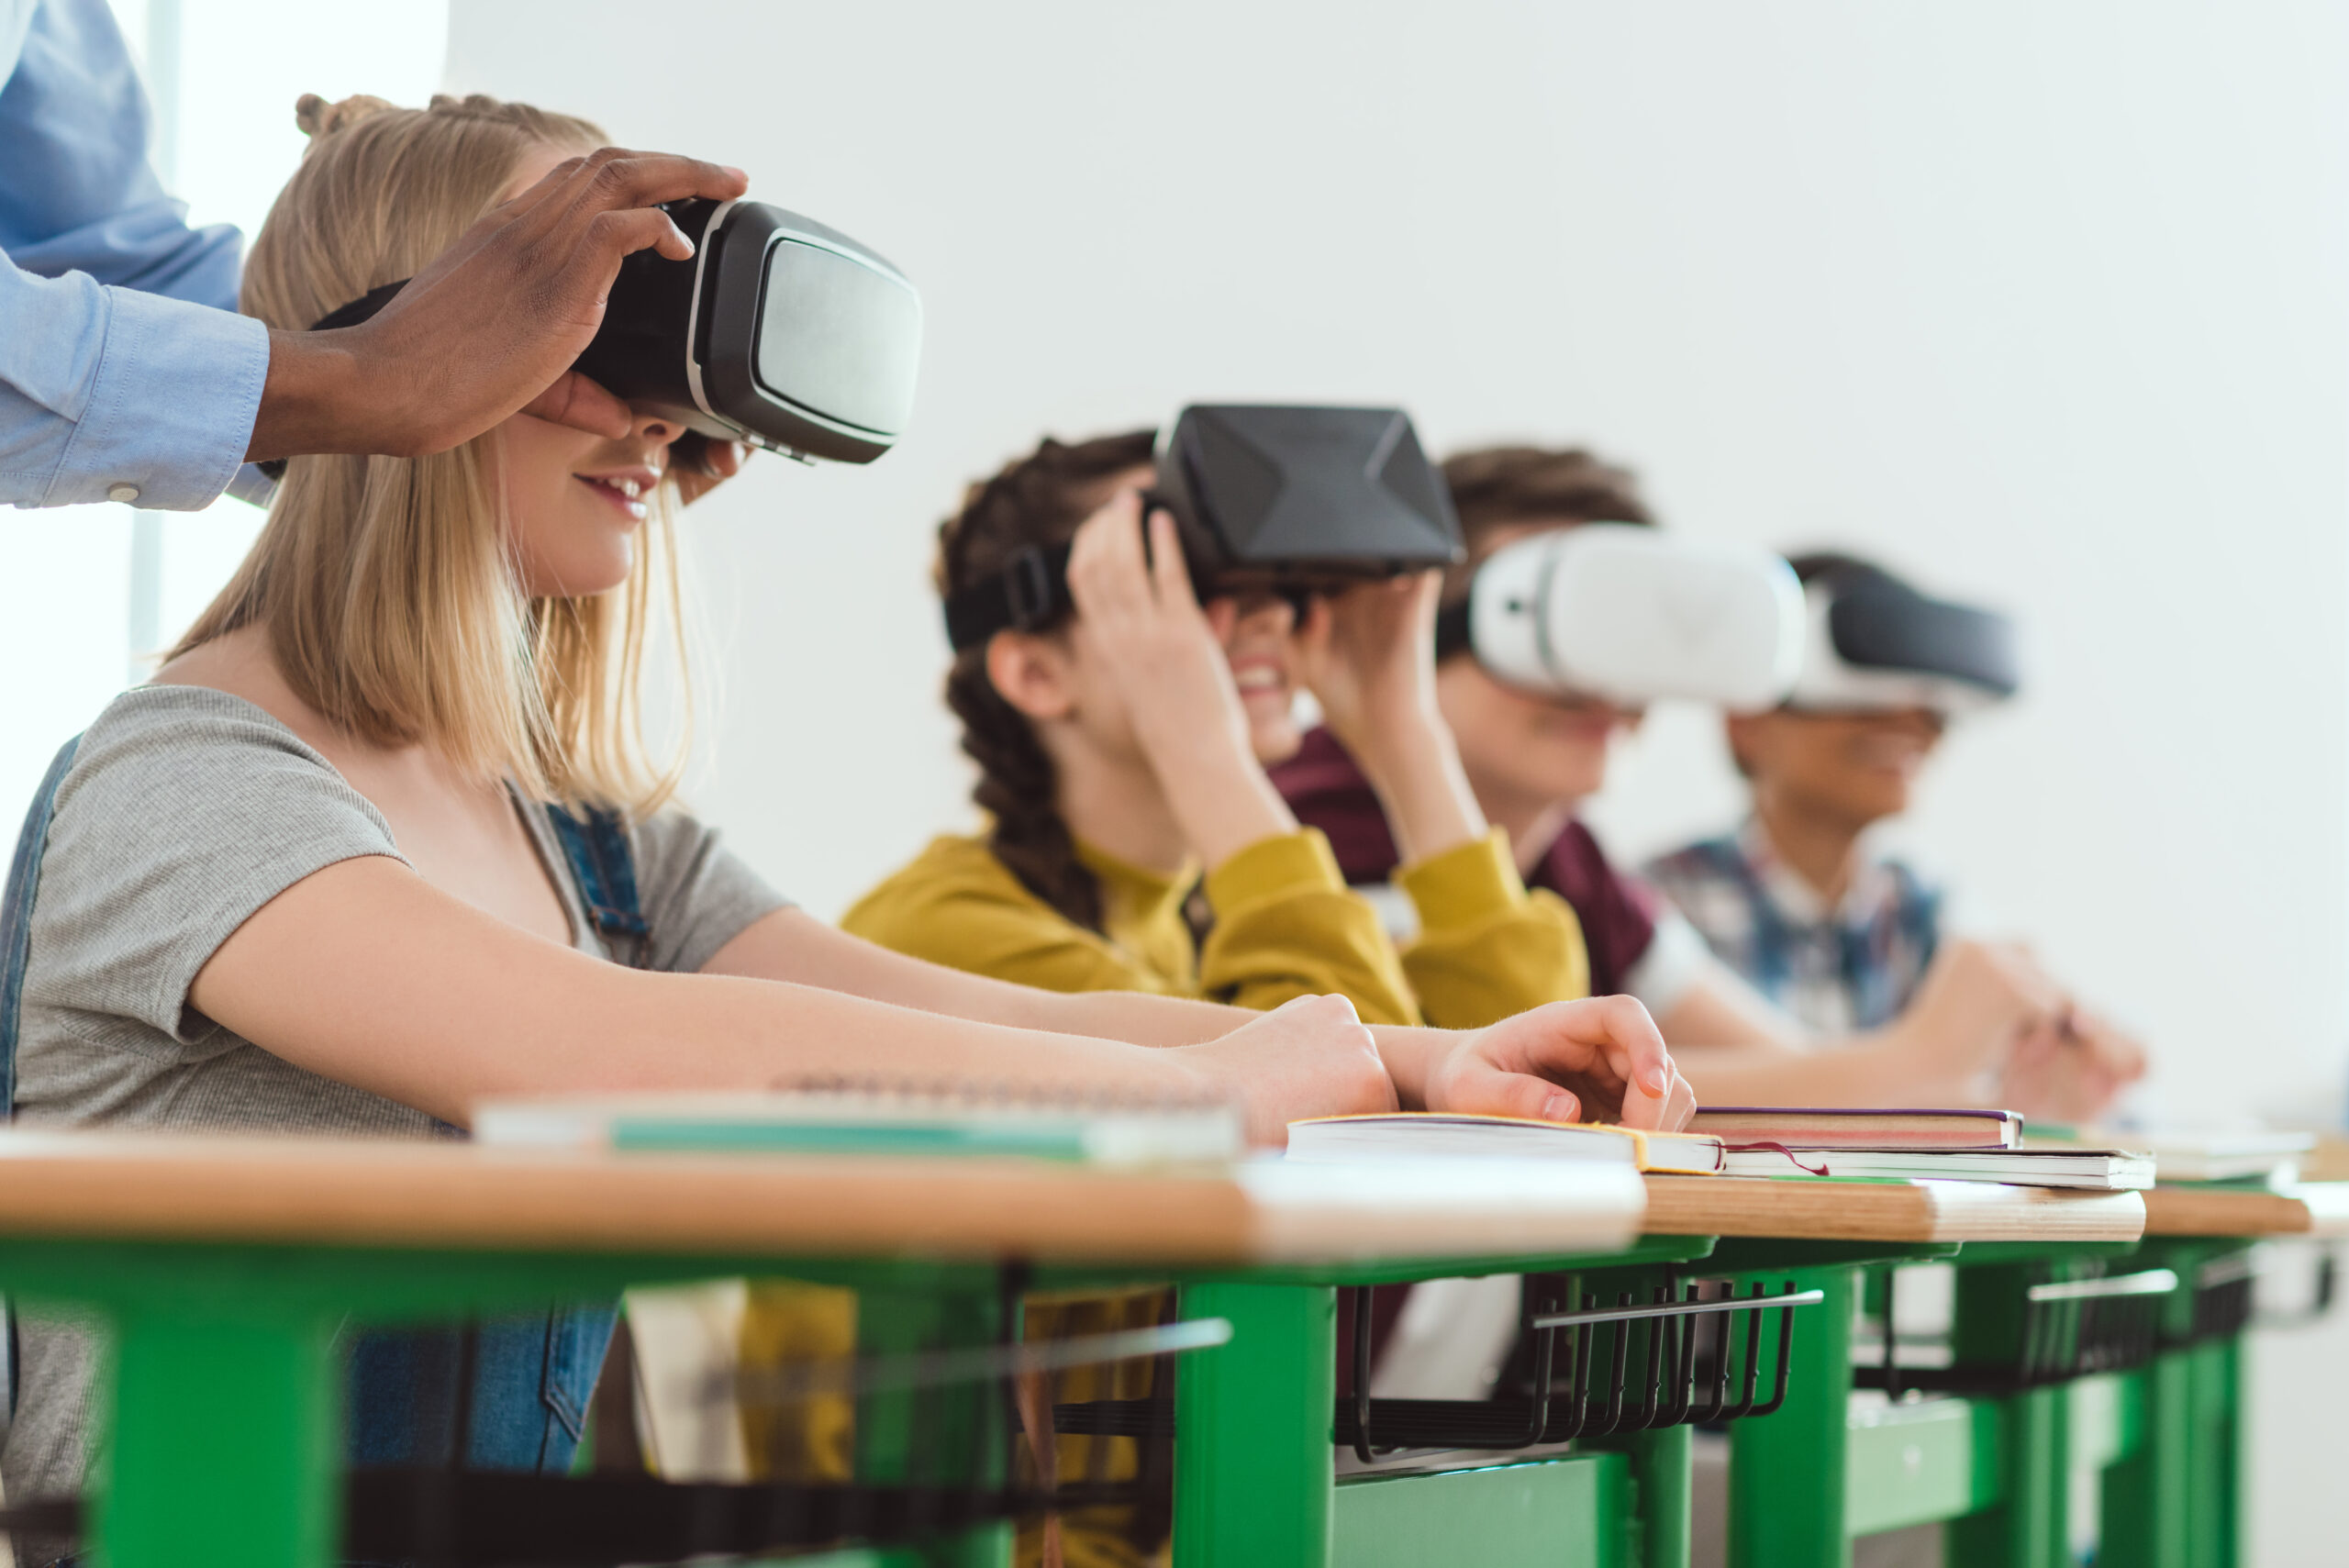 Школа vr. Виртуальная реальность в образовании. Класс виртуальной реальности. Уроки виртуальной реальности в школе. Виртуальные очки в образовании.